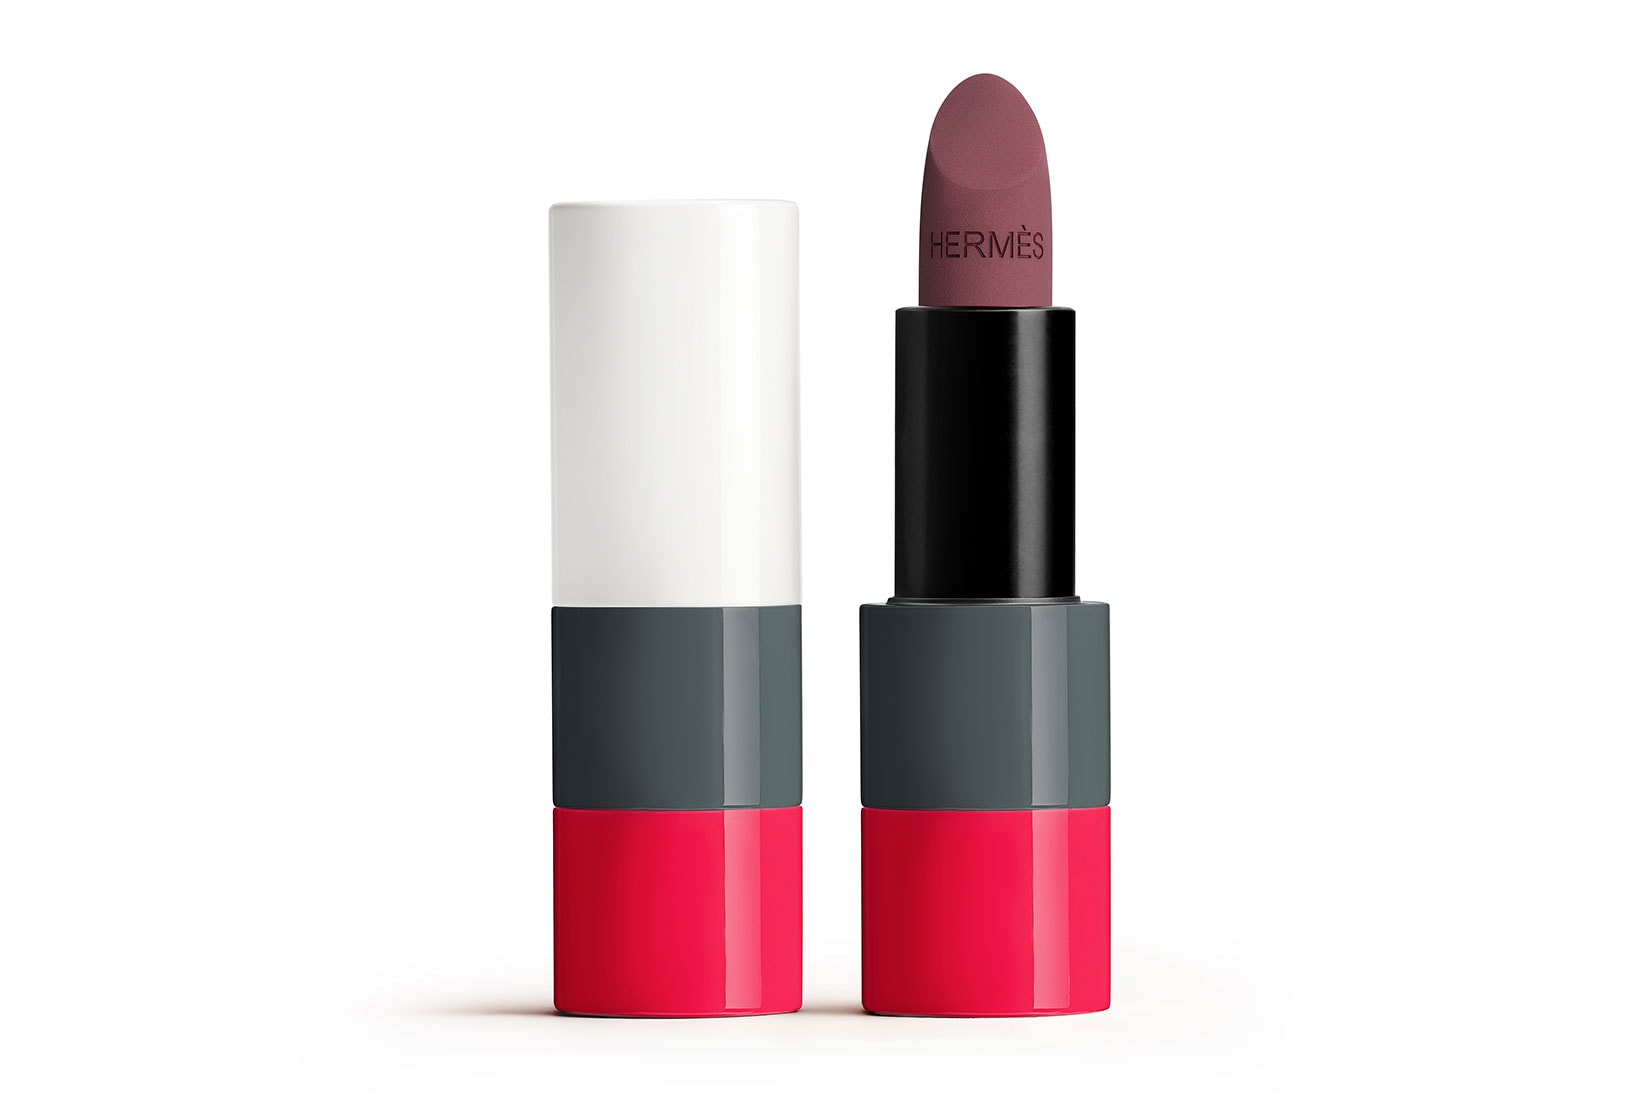 Hermes Beauty Lipsticks FW21 Rose Tamise